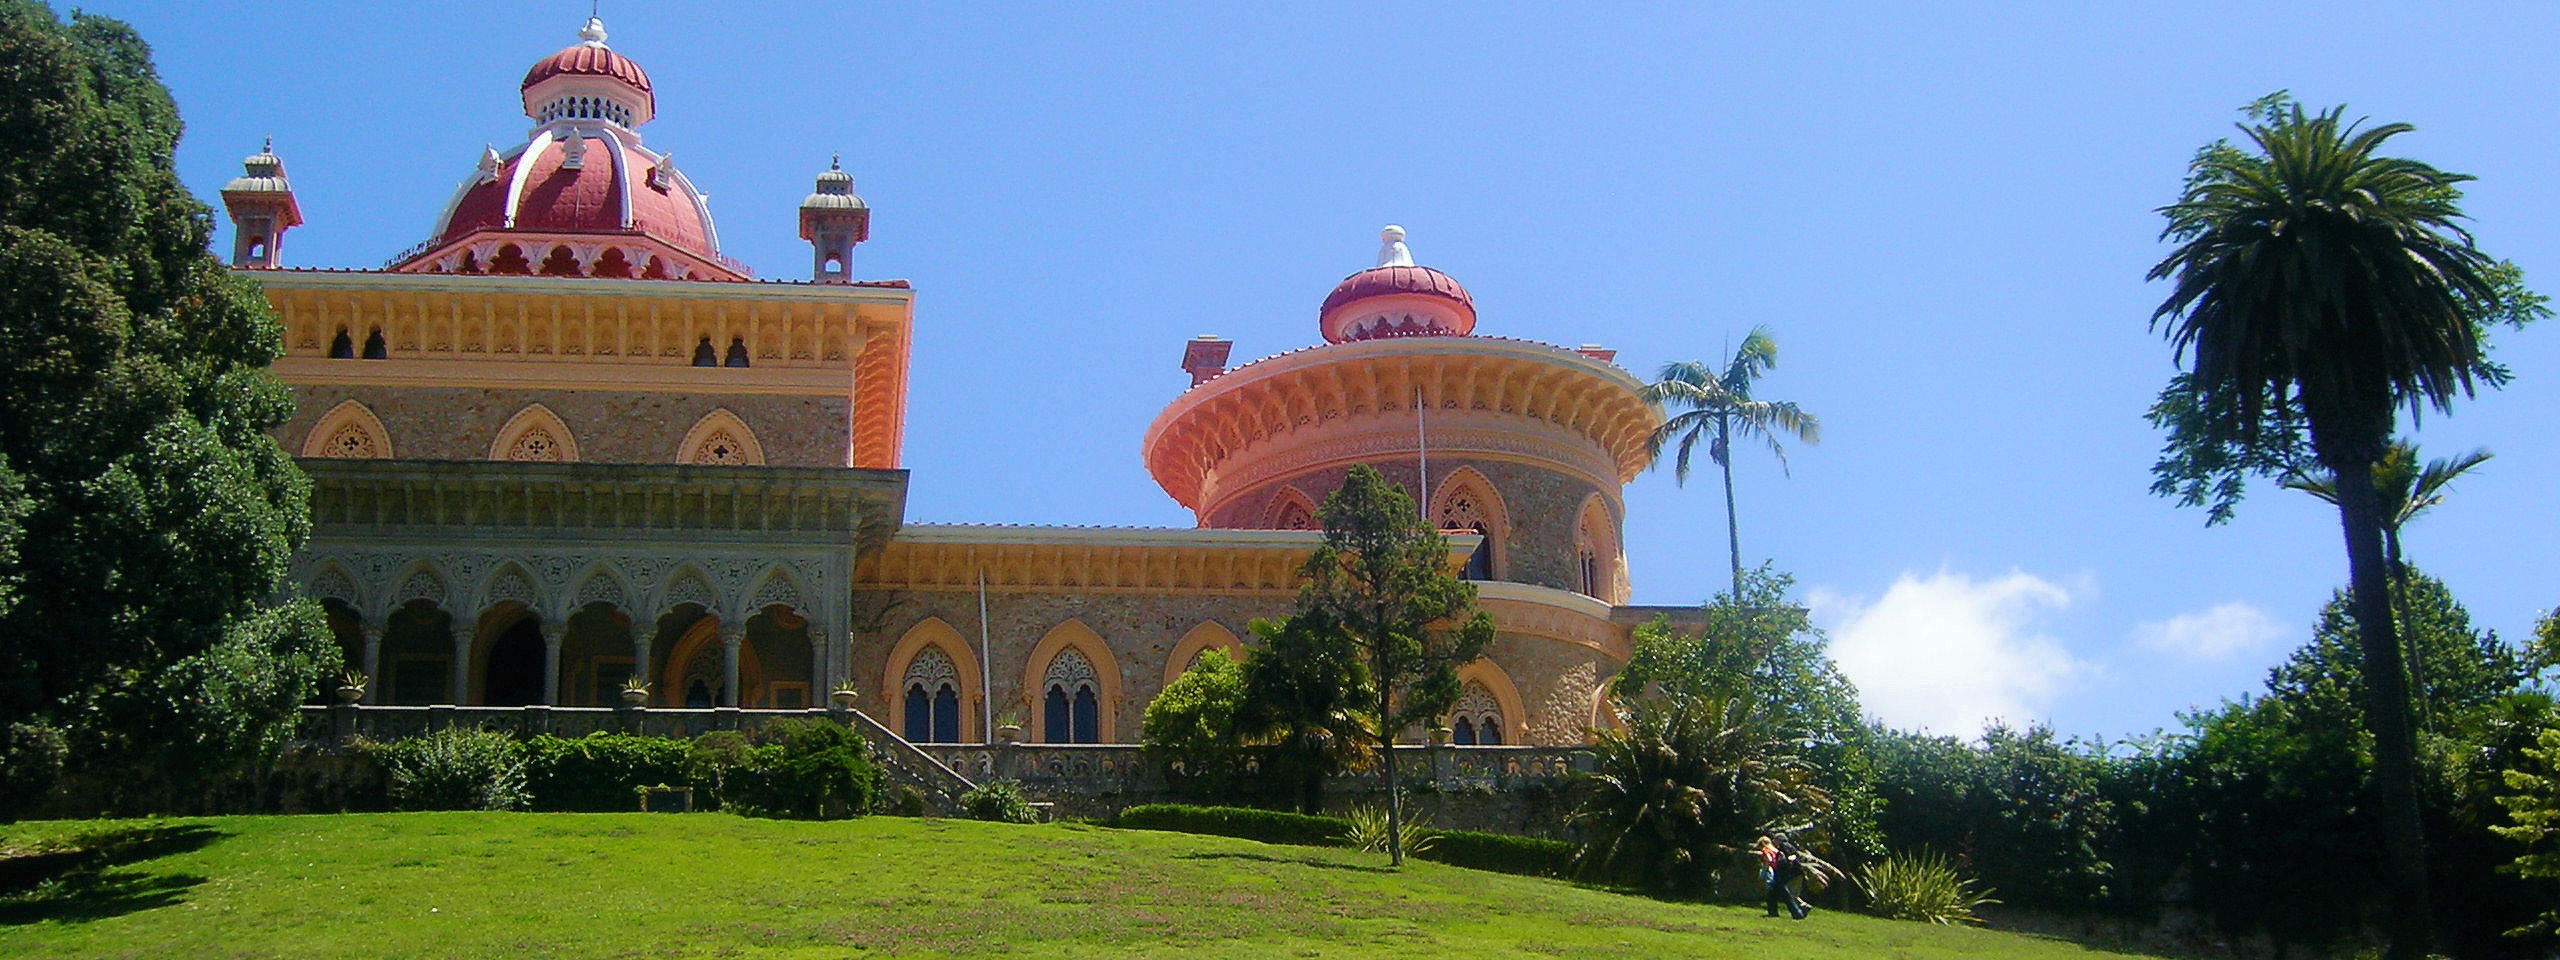 Palácio e Parque de Monserrate